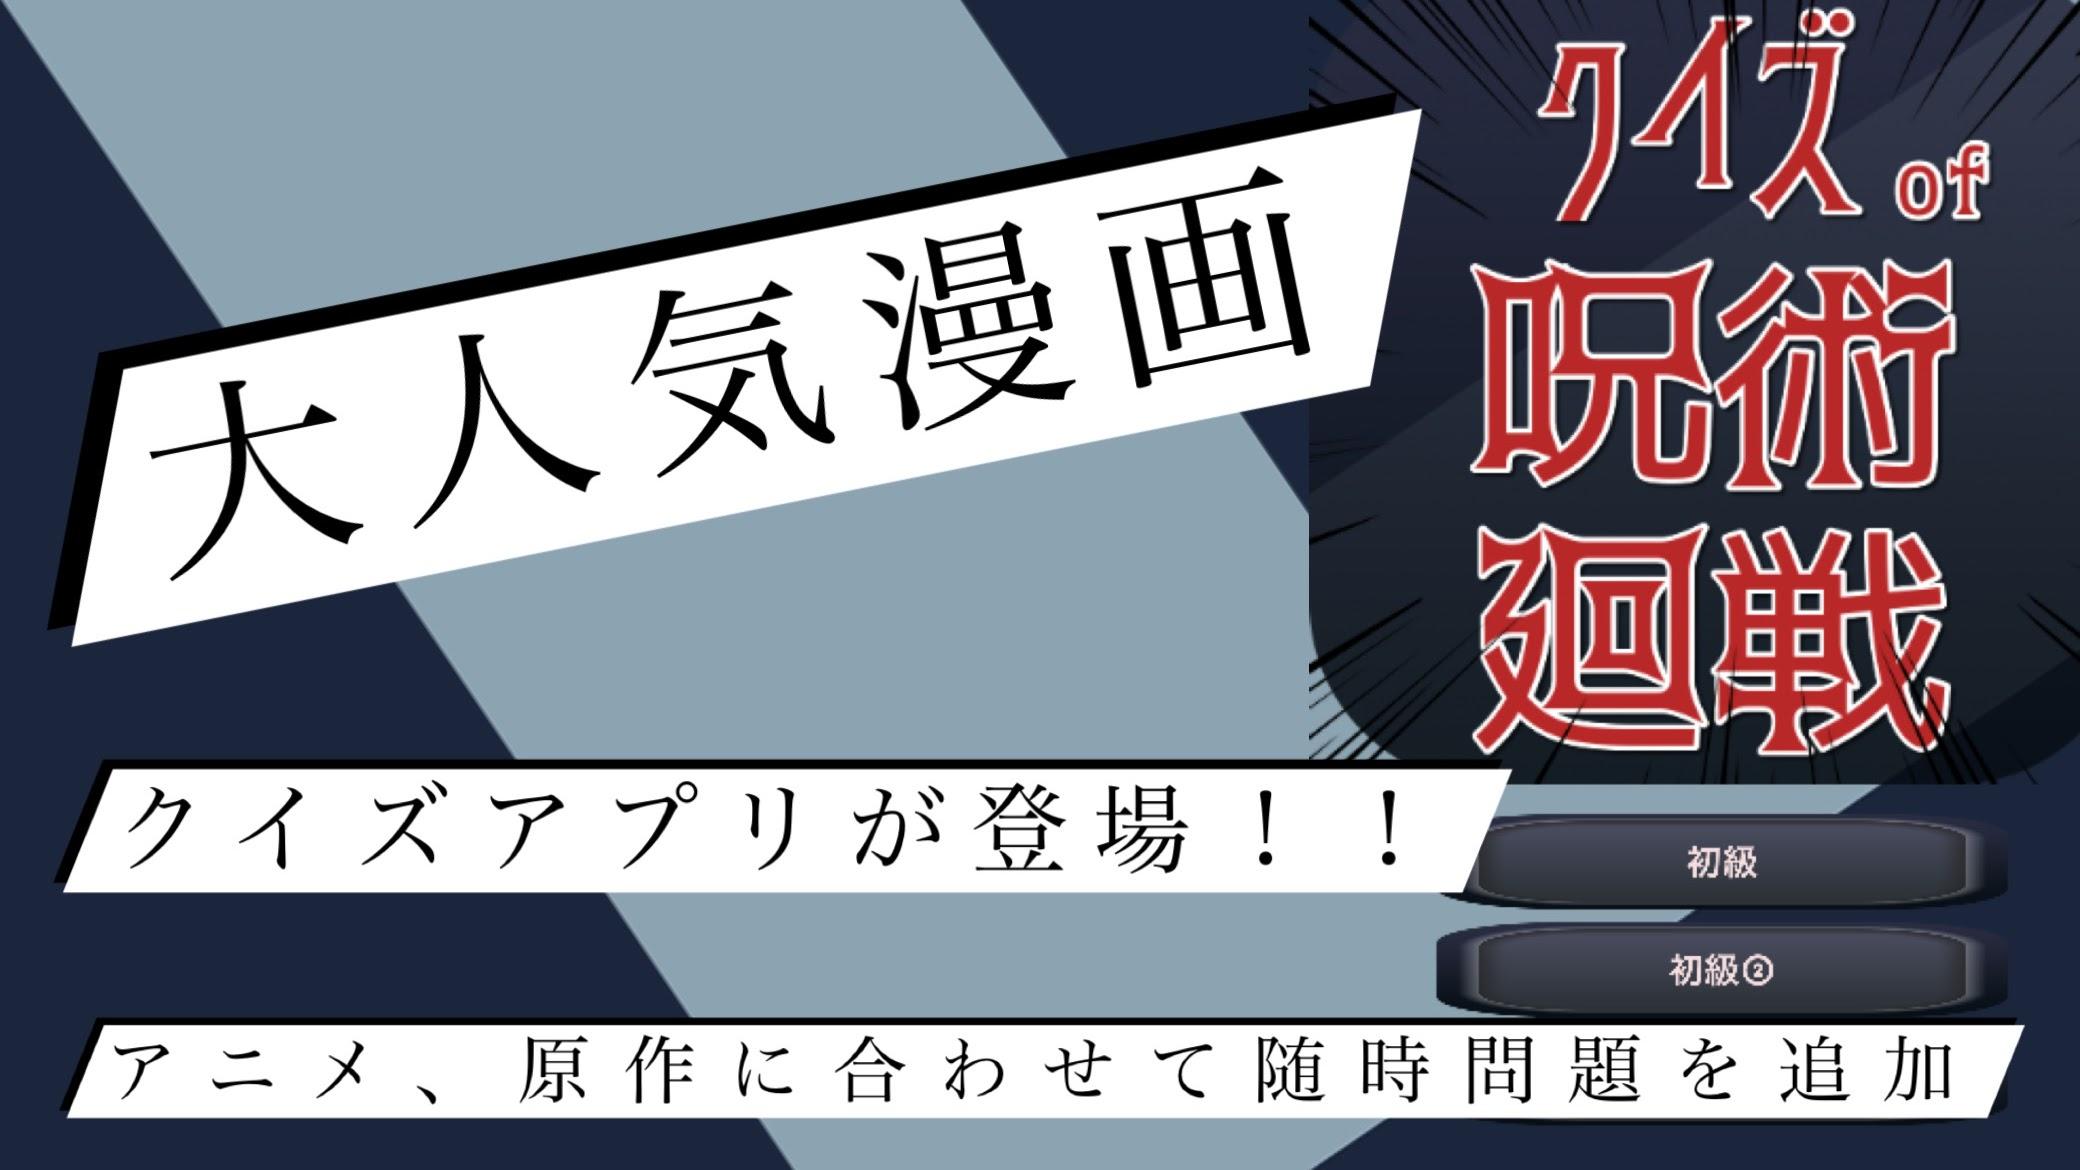 クイズof呪術廻戦 漫画アニメ映画クイズ 大人気無料クイズアプリ For Android Apk Download